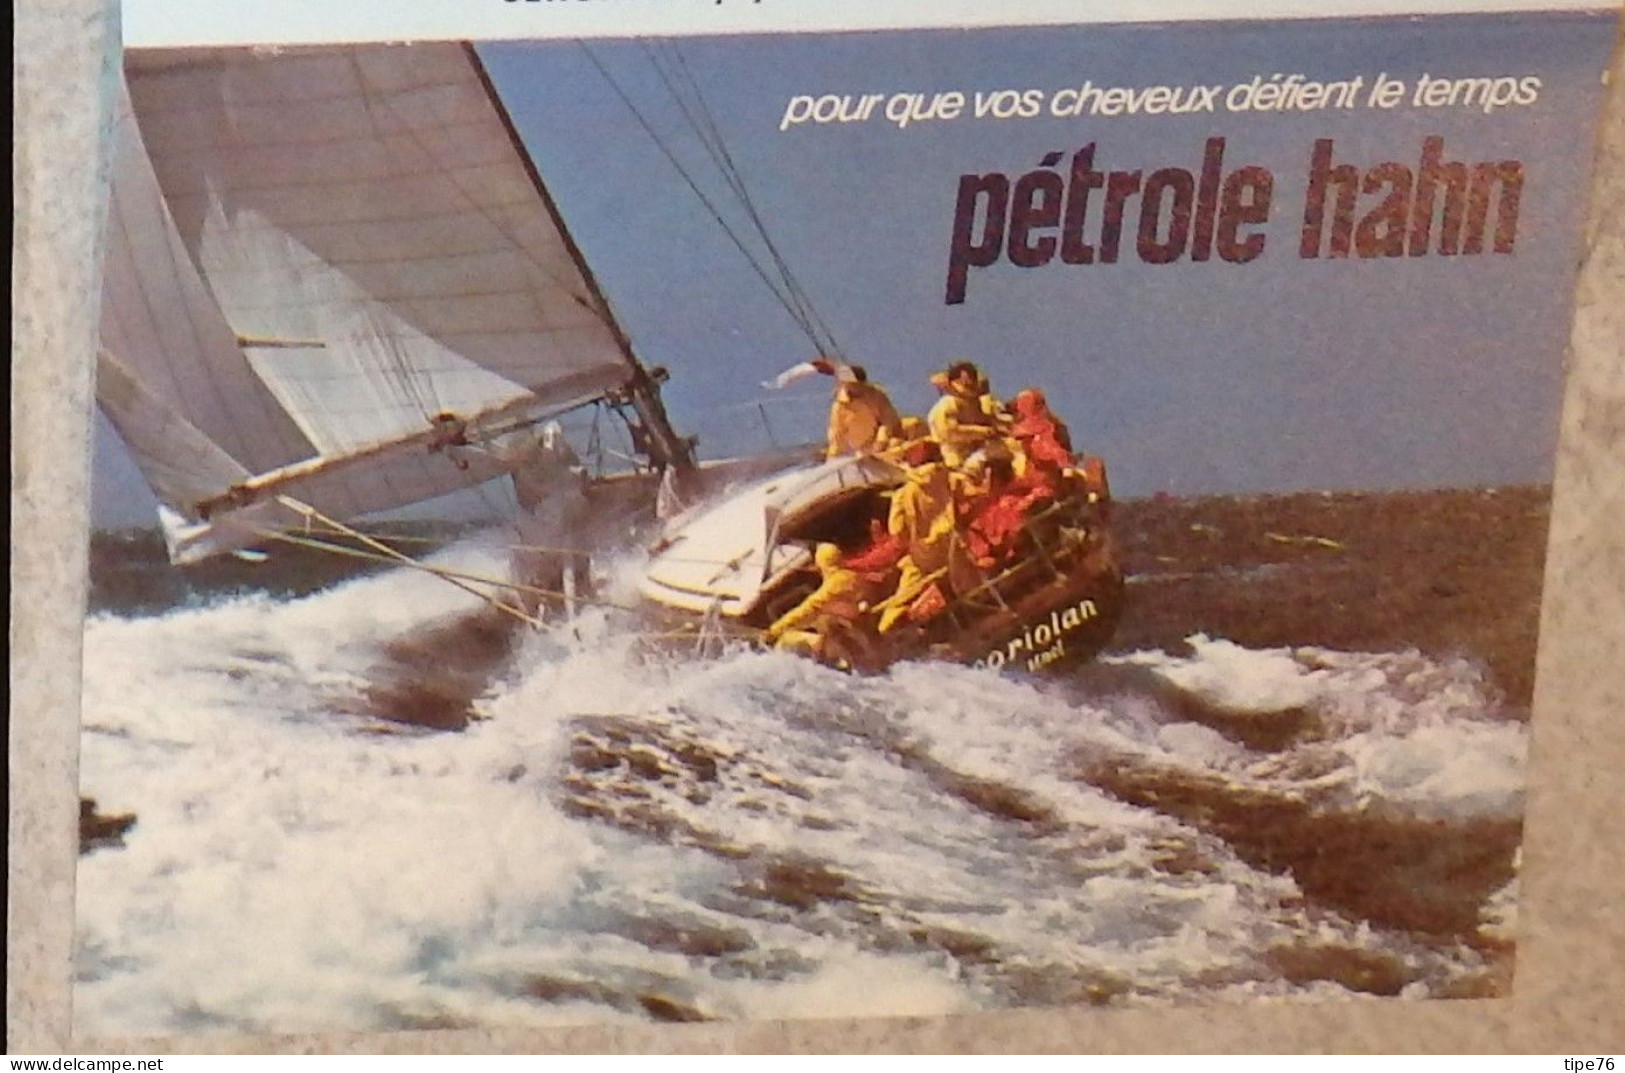 Petit Calendrier De Poche 1978 Pétrole Hahn Lotions Et Shampooings - Vateau Voilier - Klein Formaat: 1971-80